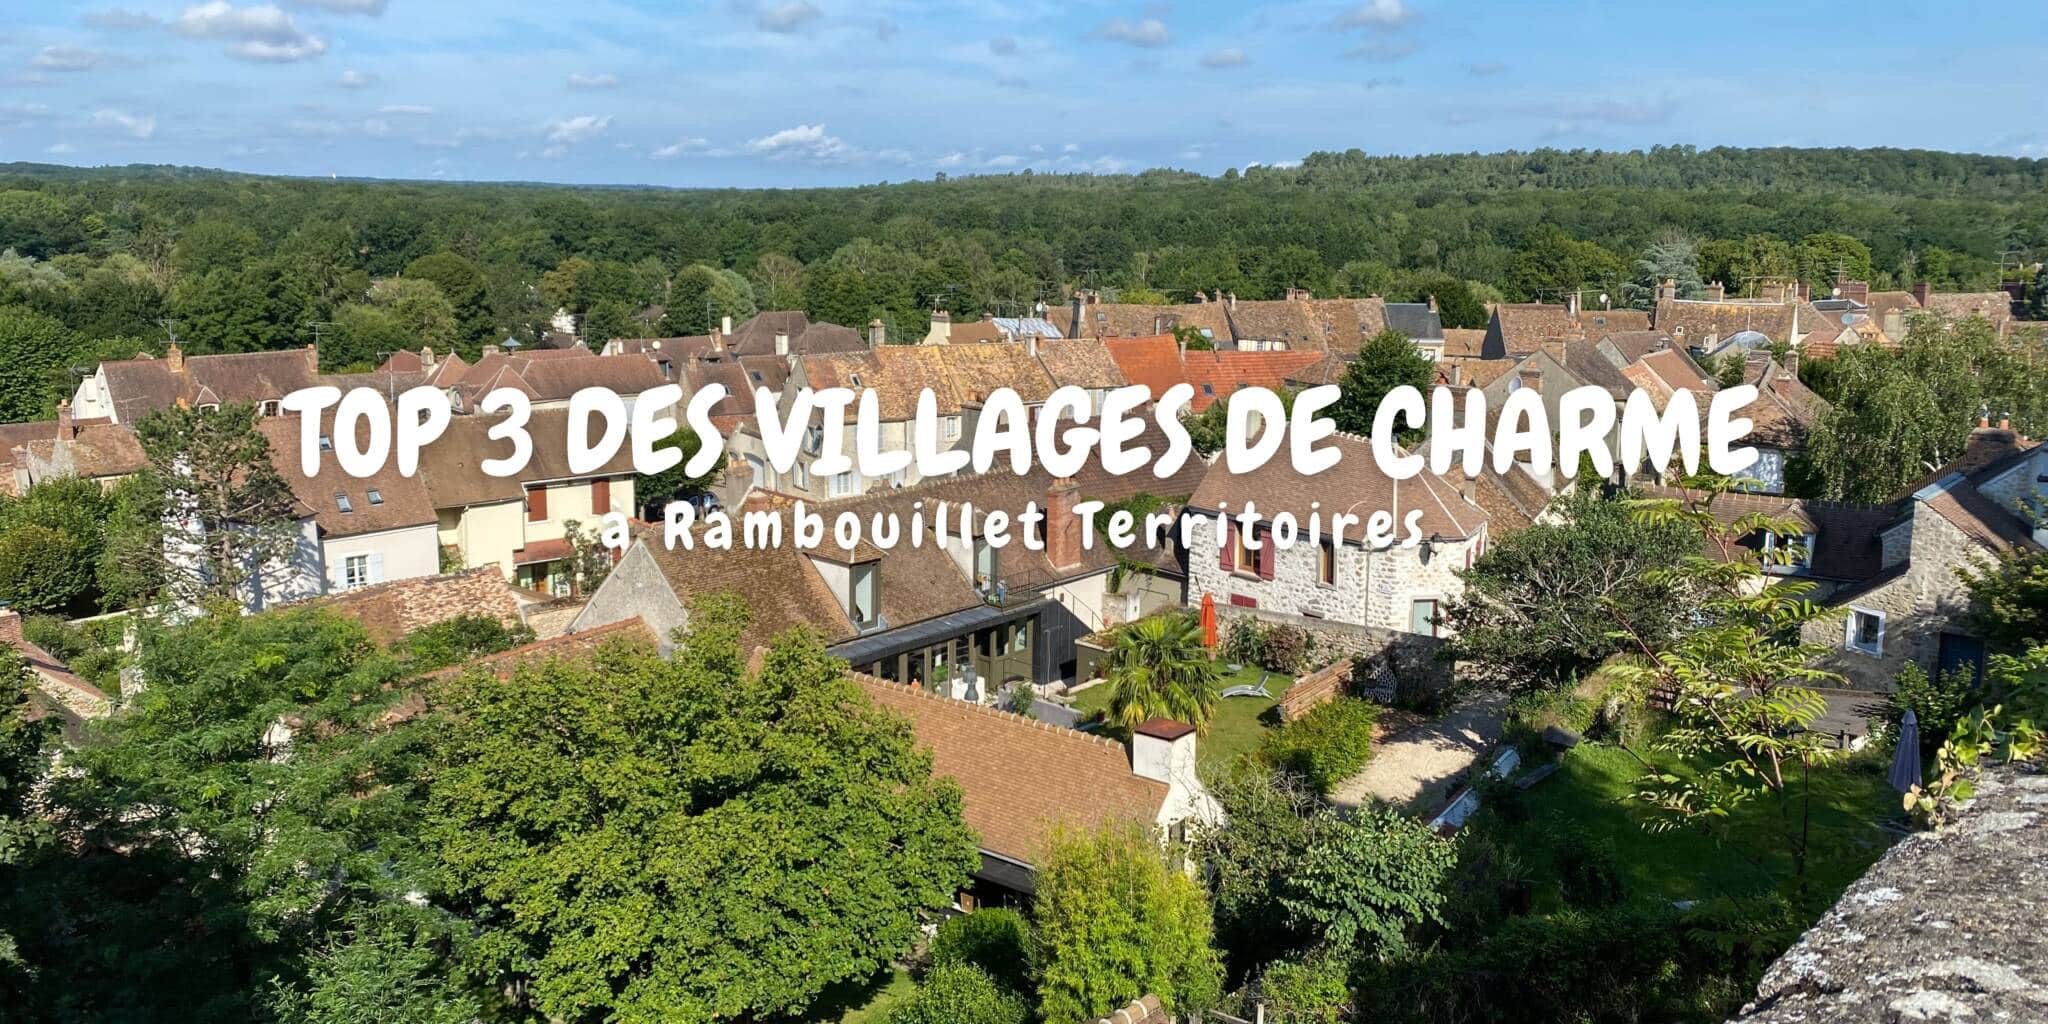 Top 3 des villages de charme dans les Yvelines